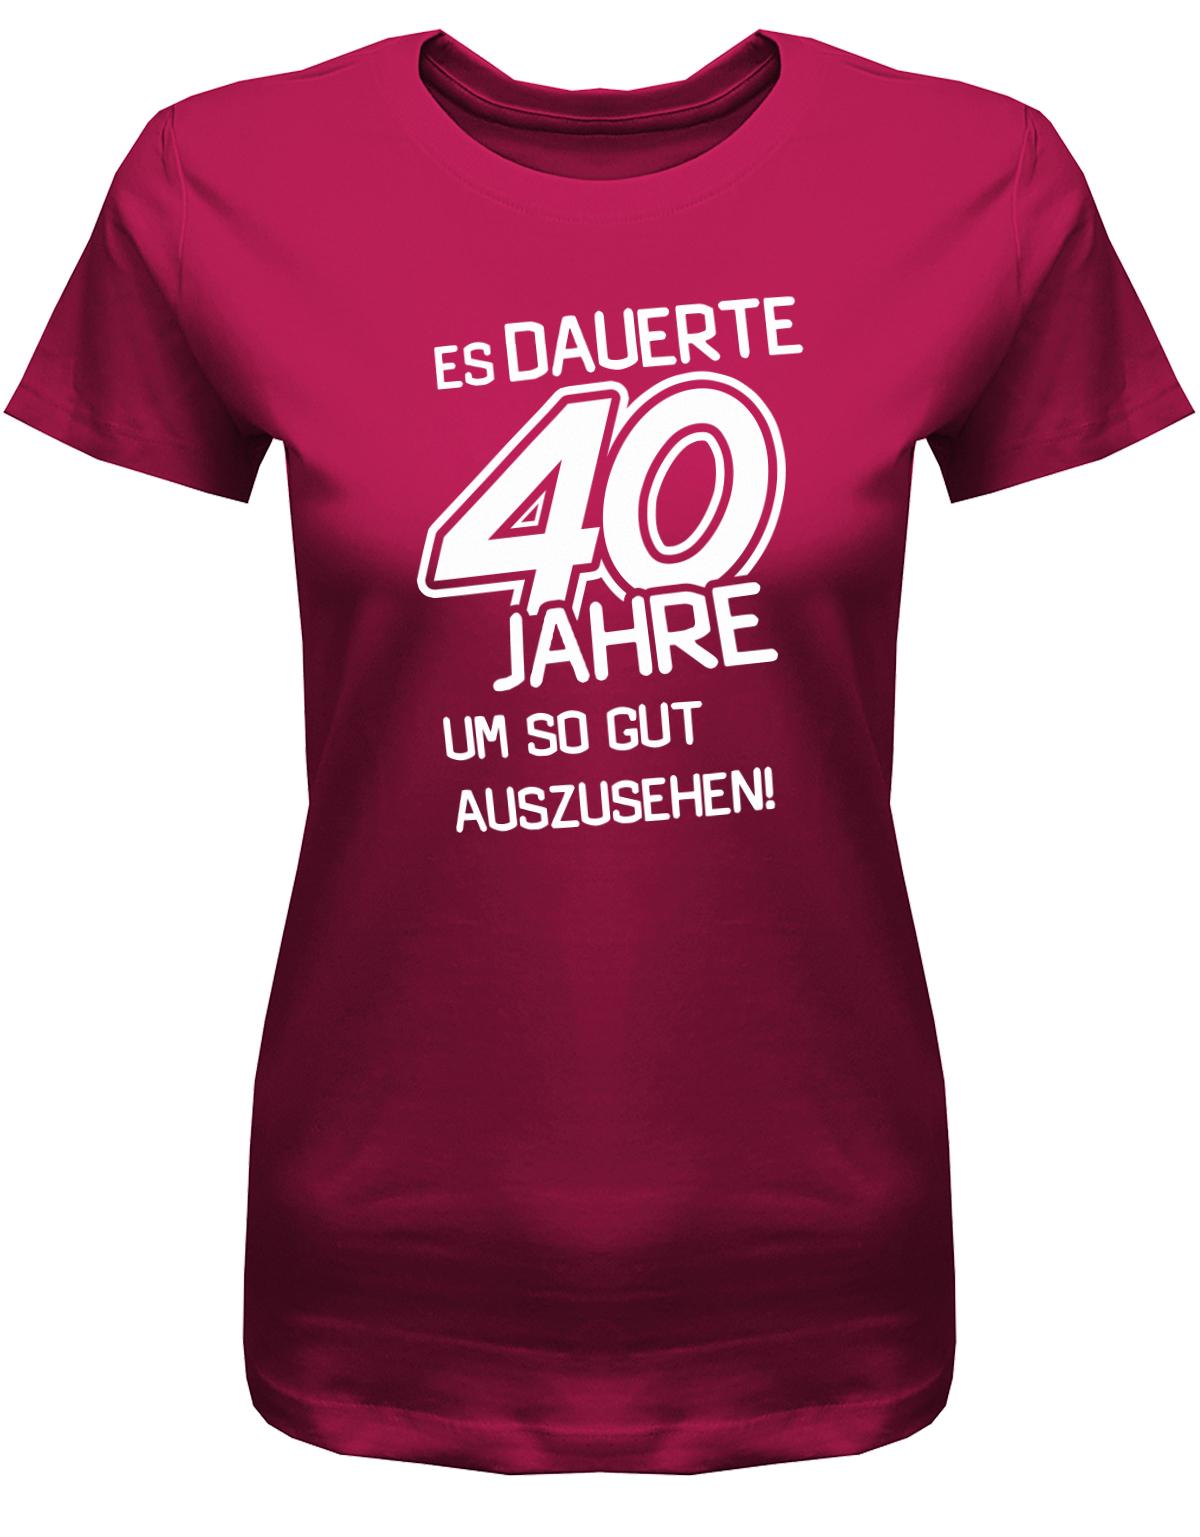 Lustiges T-Shirt zum 40 Geburtstag für die Frau Bedruckt mit Es dauerte 40 Jahre, um so gut auszusehen! Sorbet